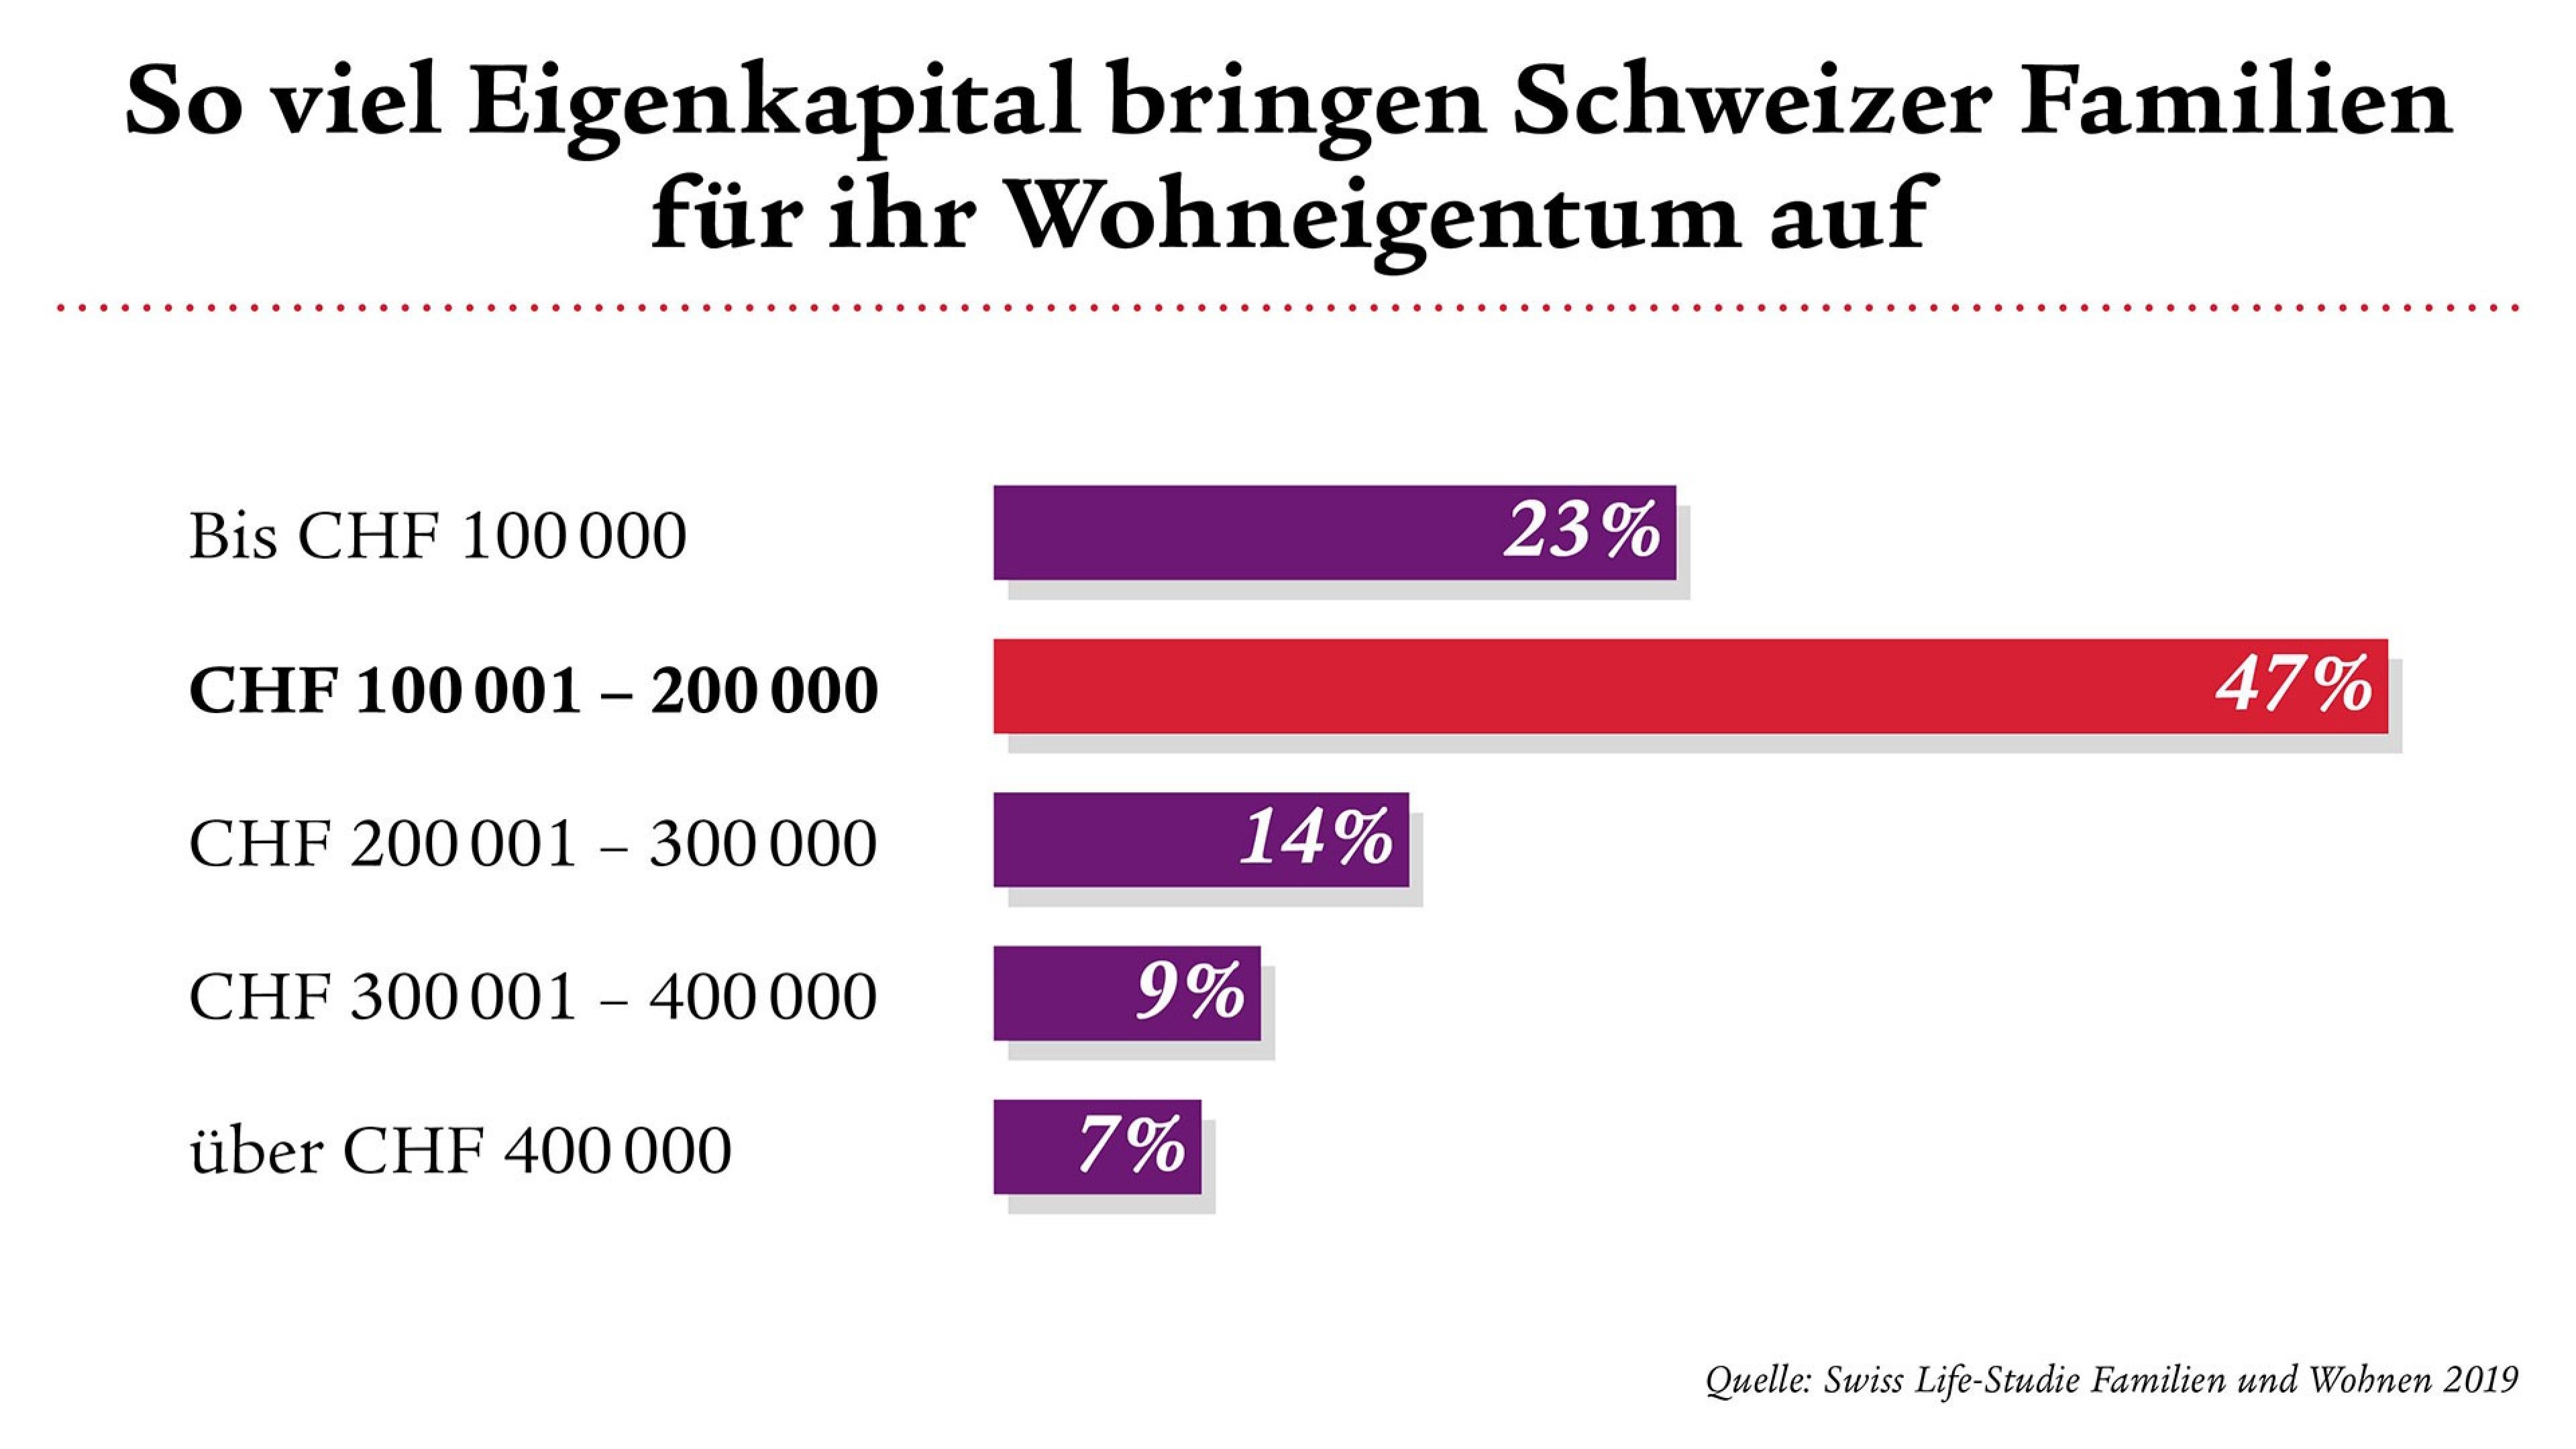 47% der Schweizer Familien bringen CHF 100 001 - 200 000 an Eigenkapital auf.